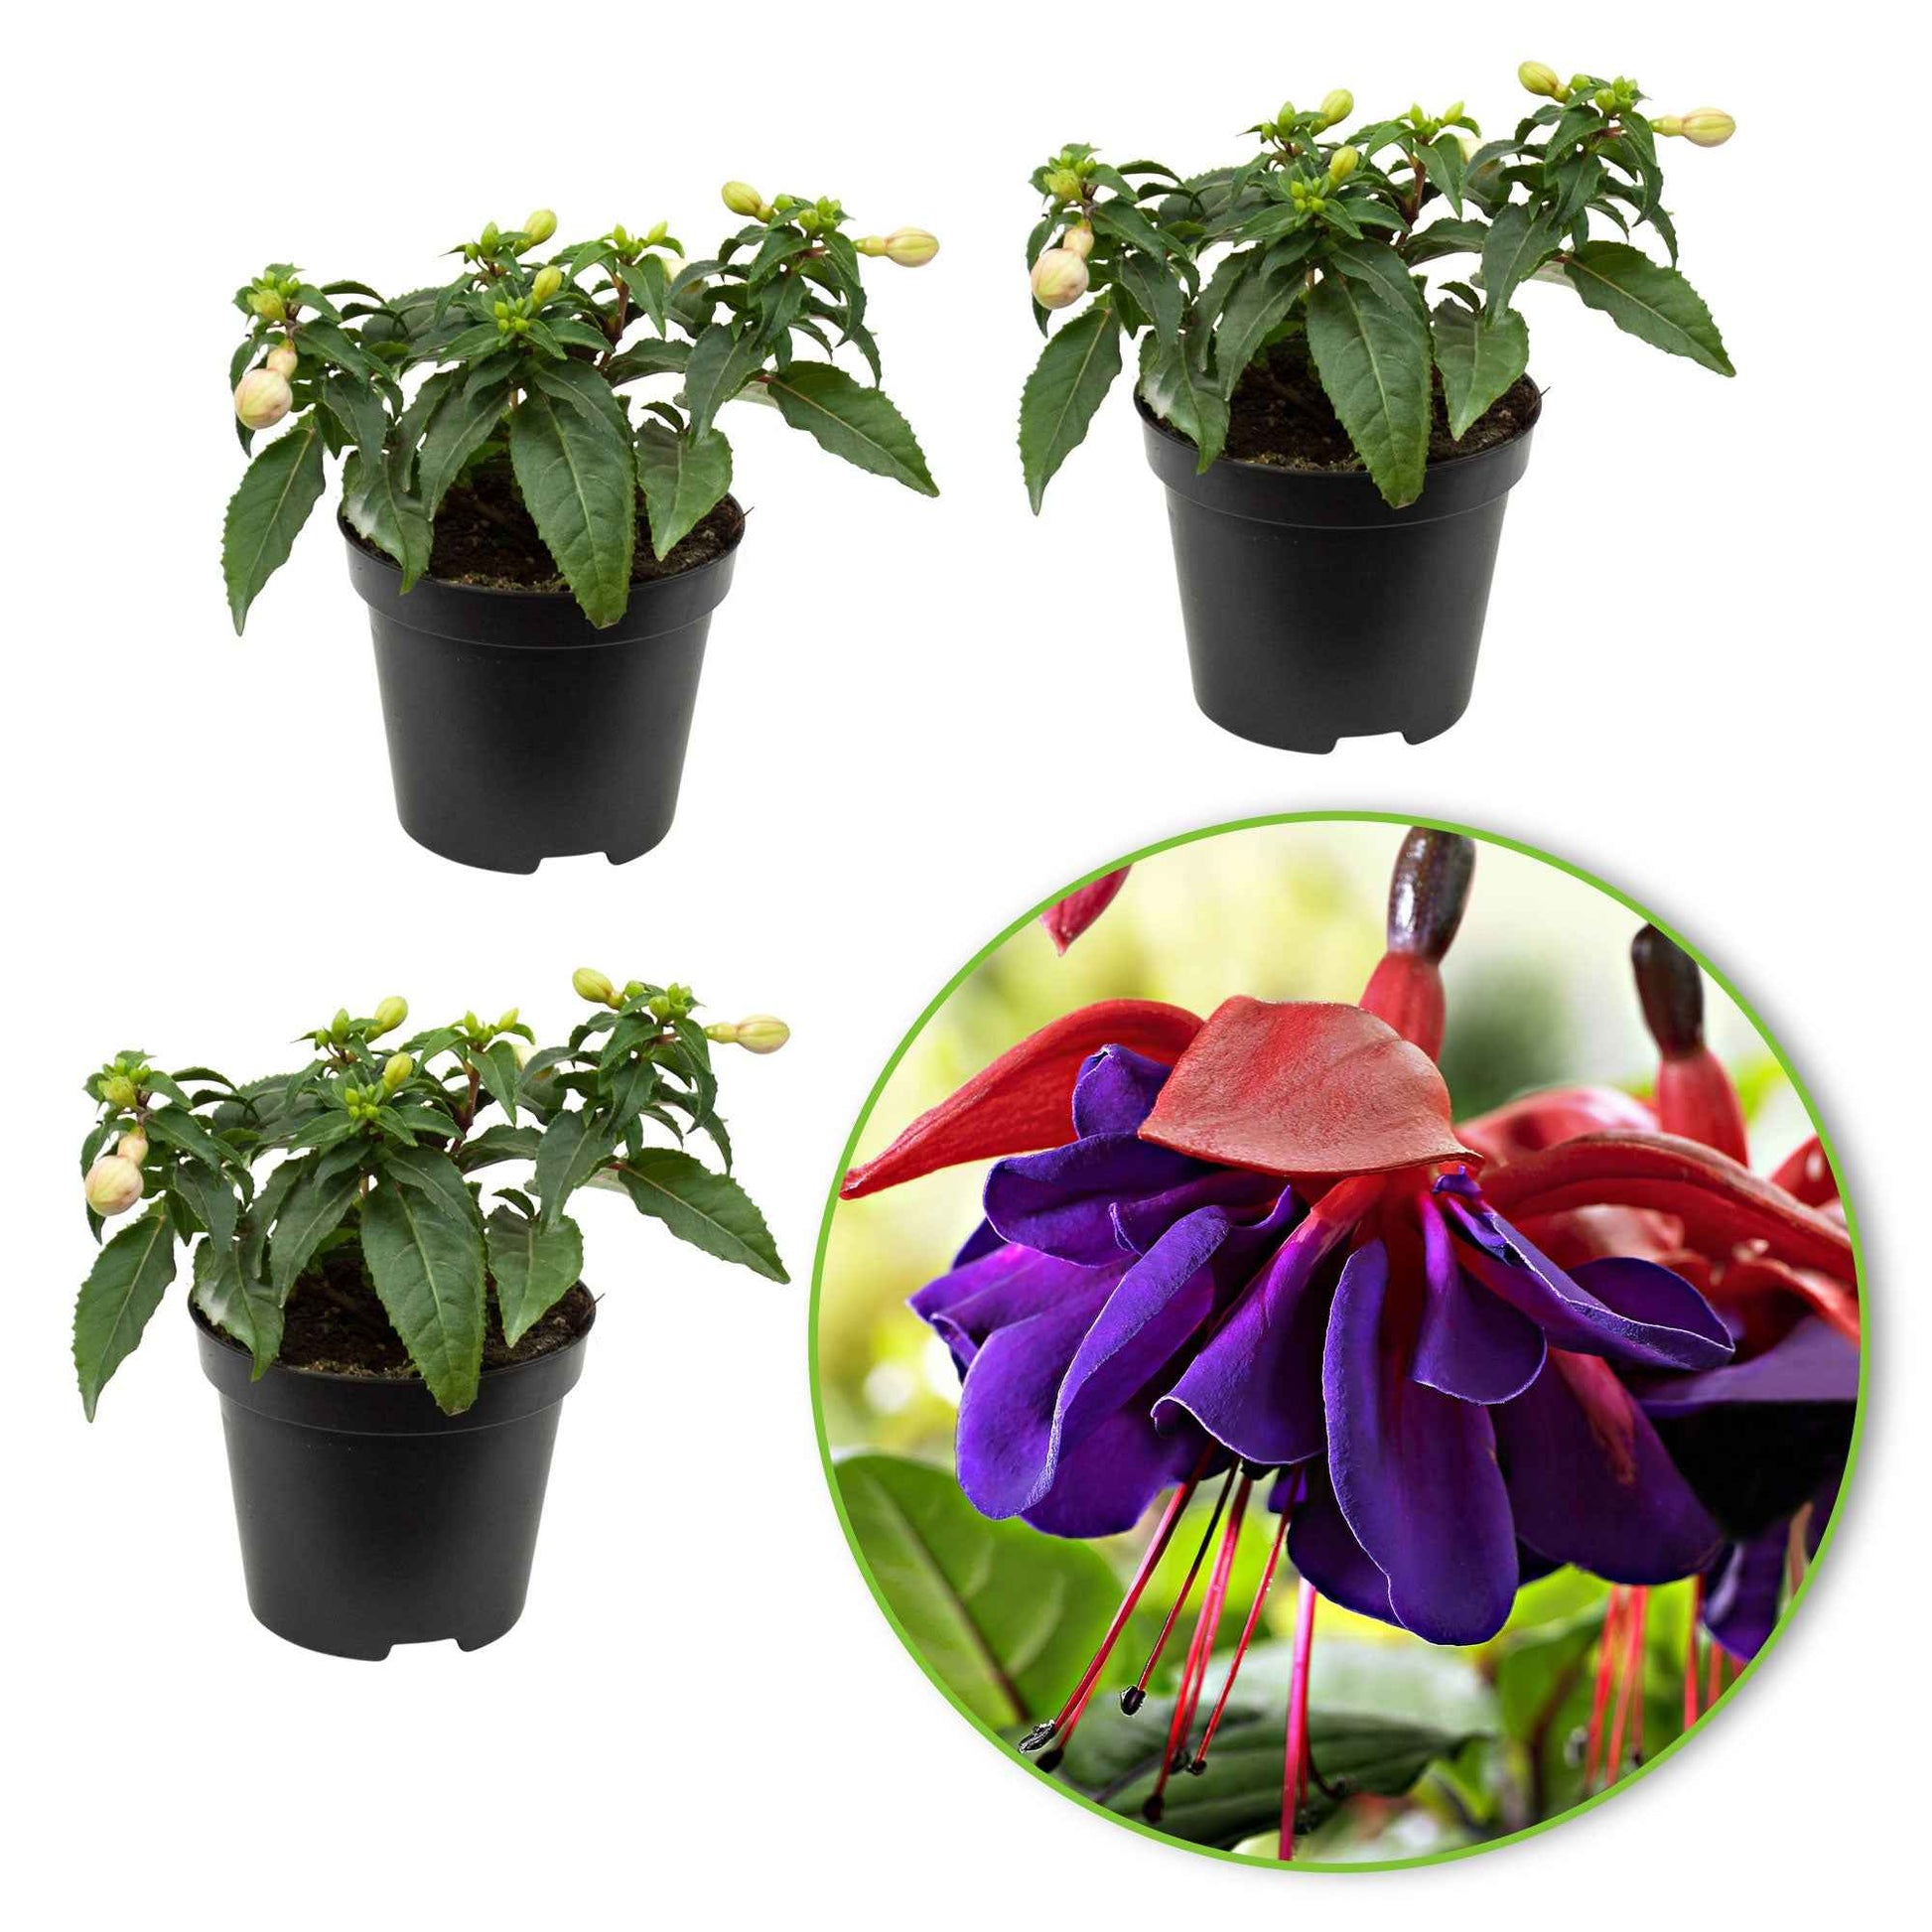 3x Dubbelbloemige Fuchsia 'Voodoo' roze-paars - Buitenplant in pot cadeau